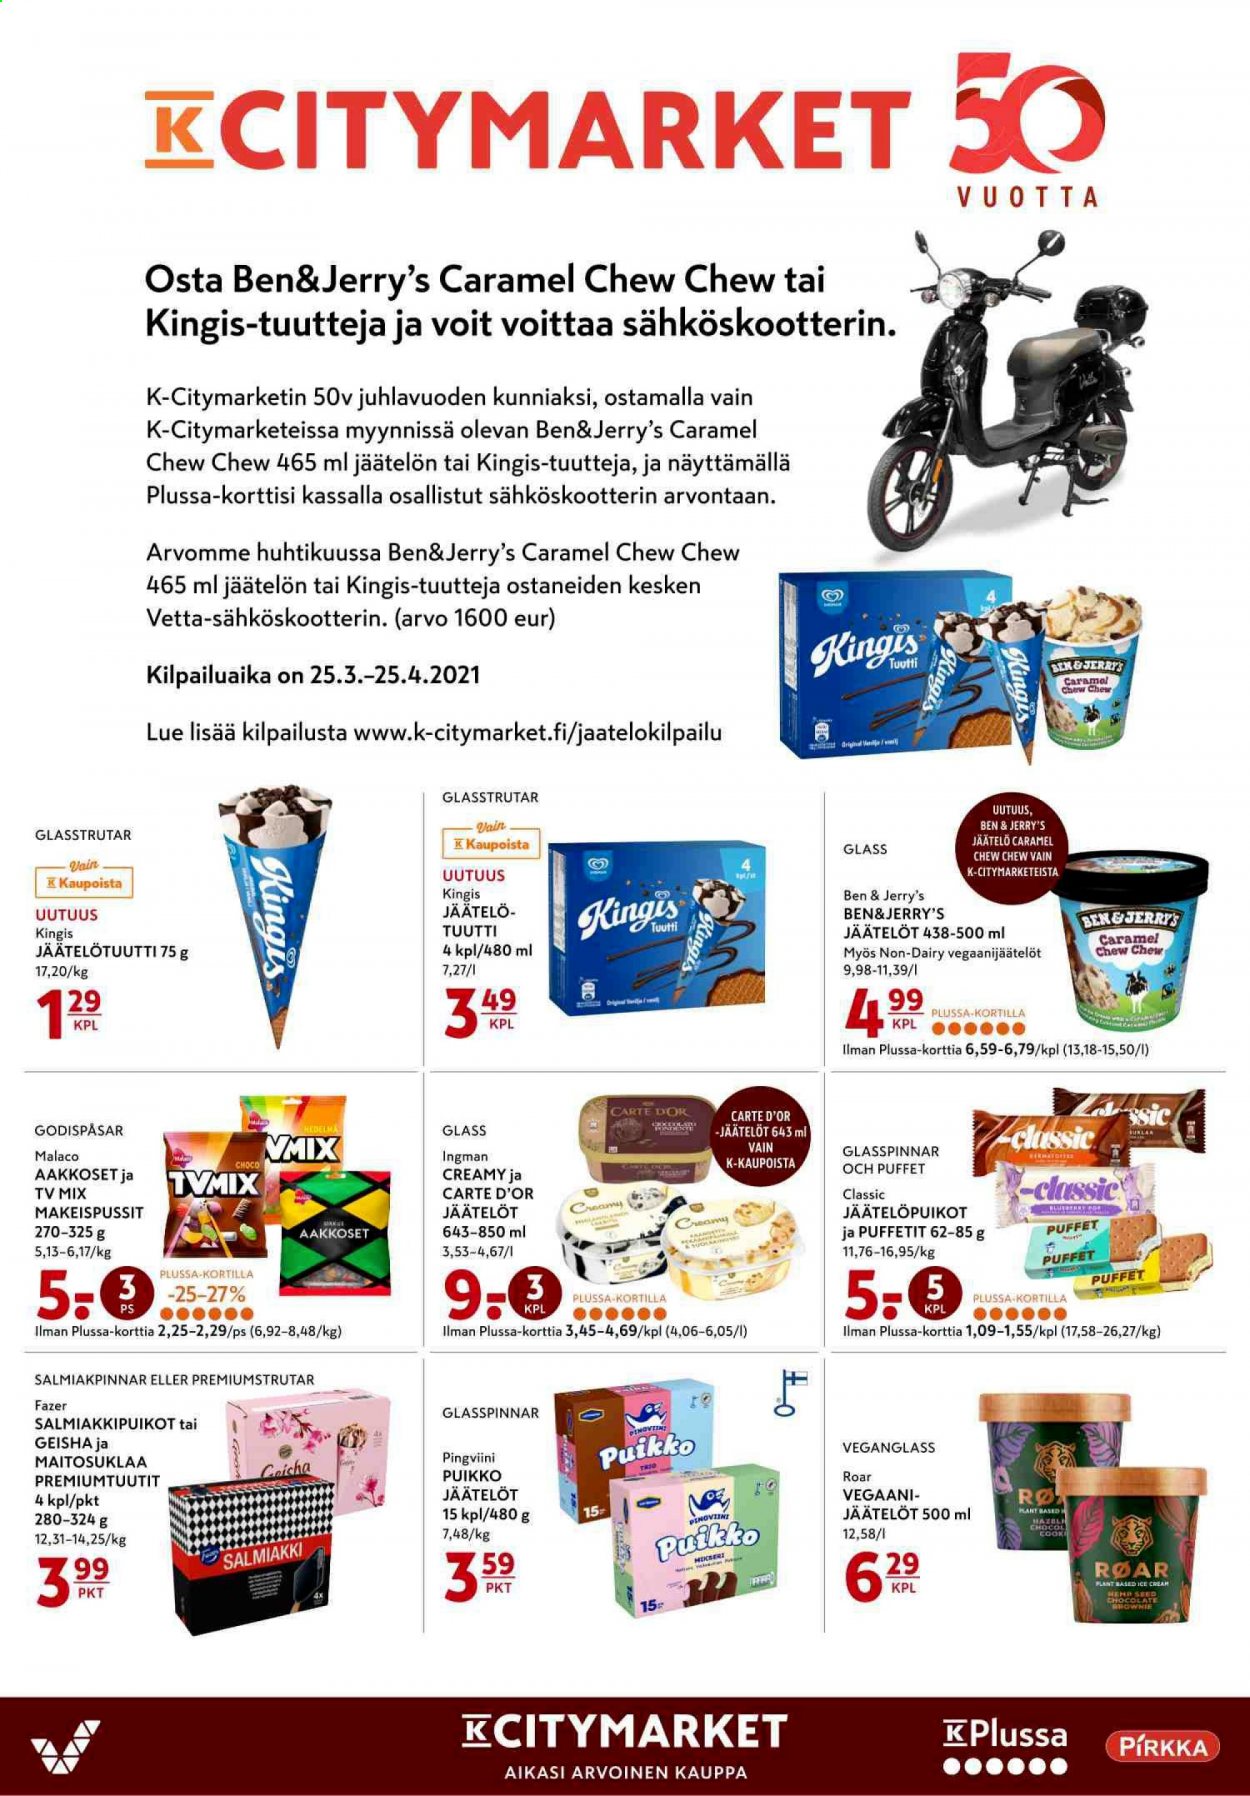 thumbnail - K-citymarket tarjoukset  - 15.04.2021 - 18.04.2021 - Tarjoustuotteet - Ben & Jerry's, jäätelö, jäätelöpuikko, Karl Fazer. Sivu 12.